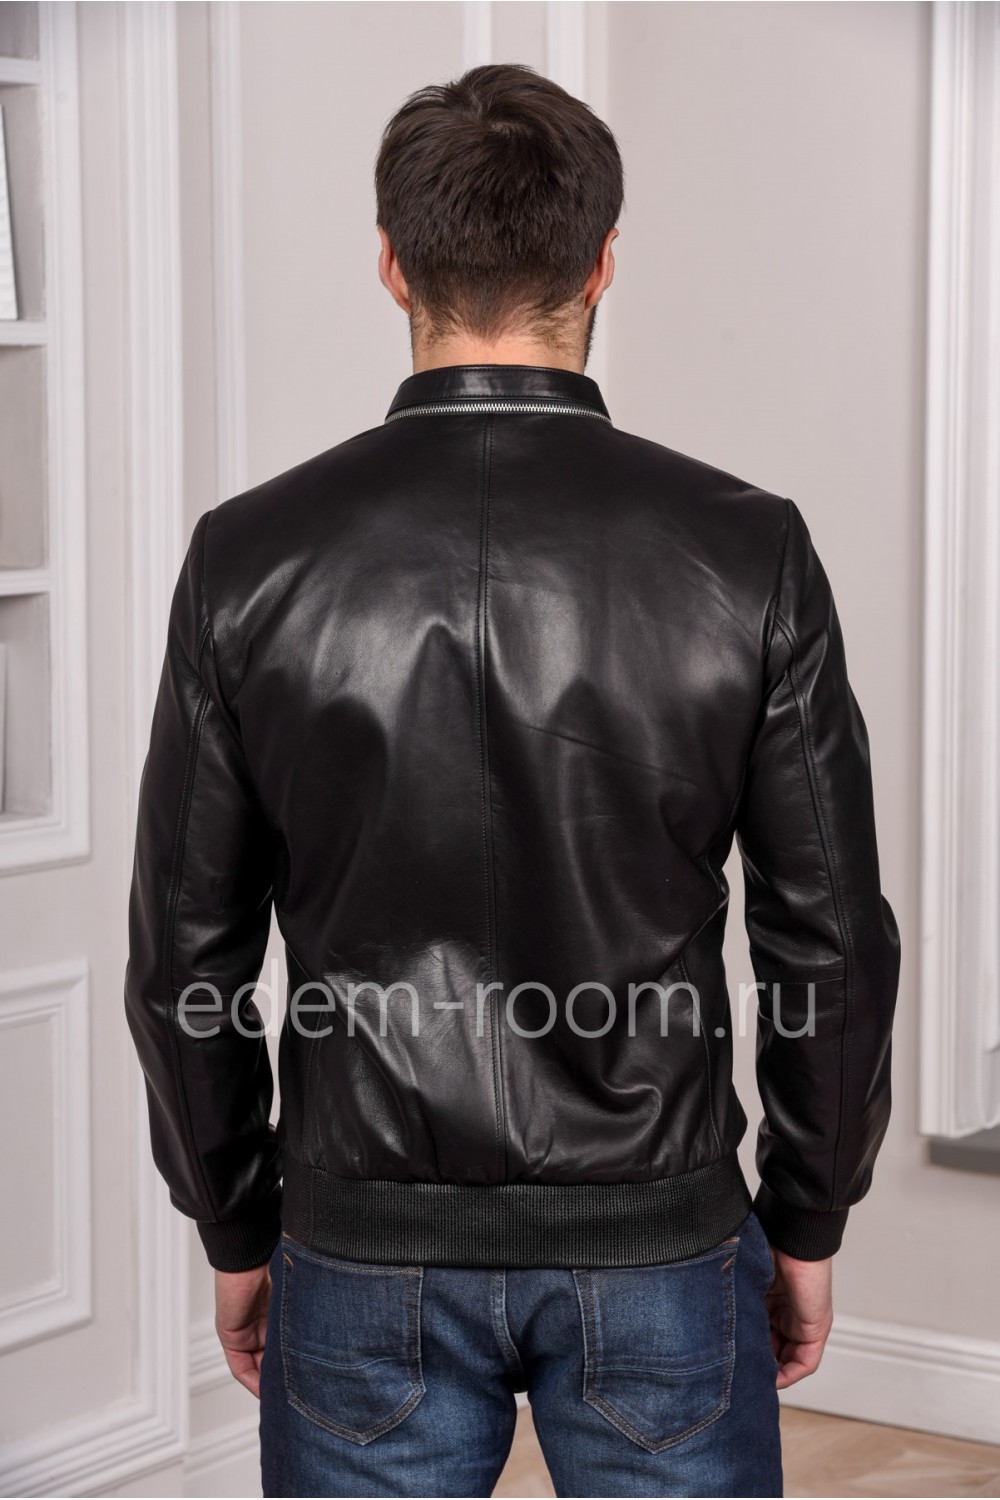 Черная куртка кожаная мужская на весну, натуральная кожа